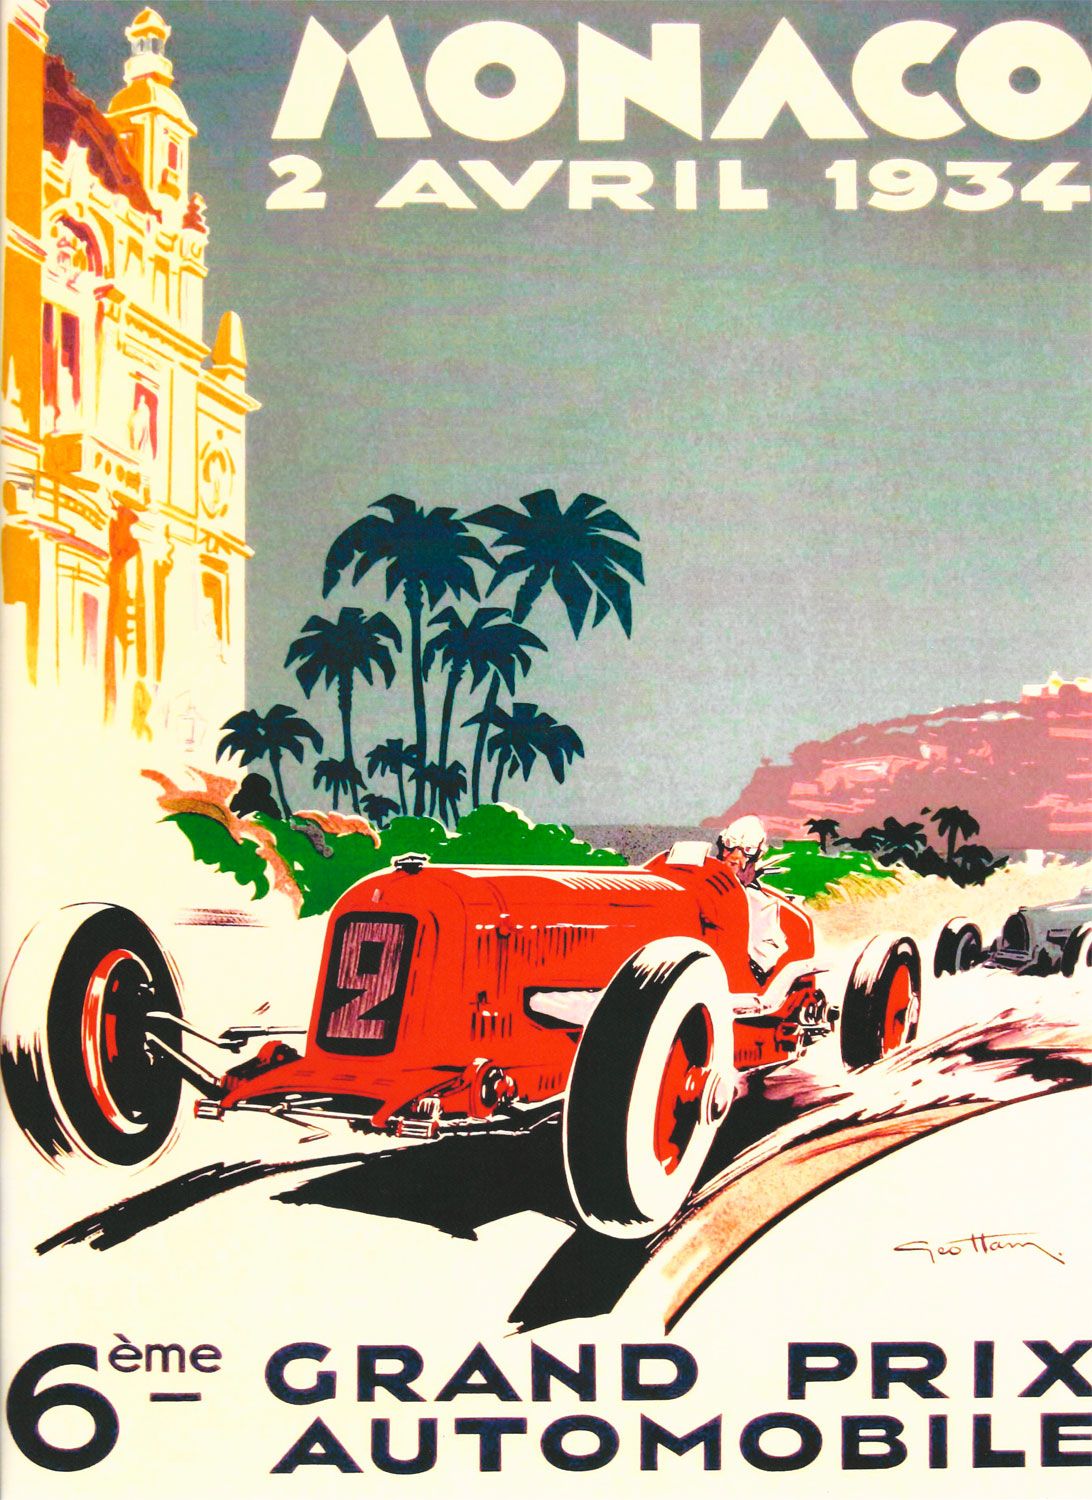 Monaco 1934